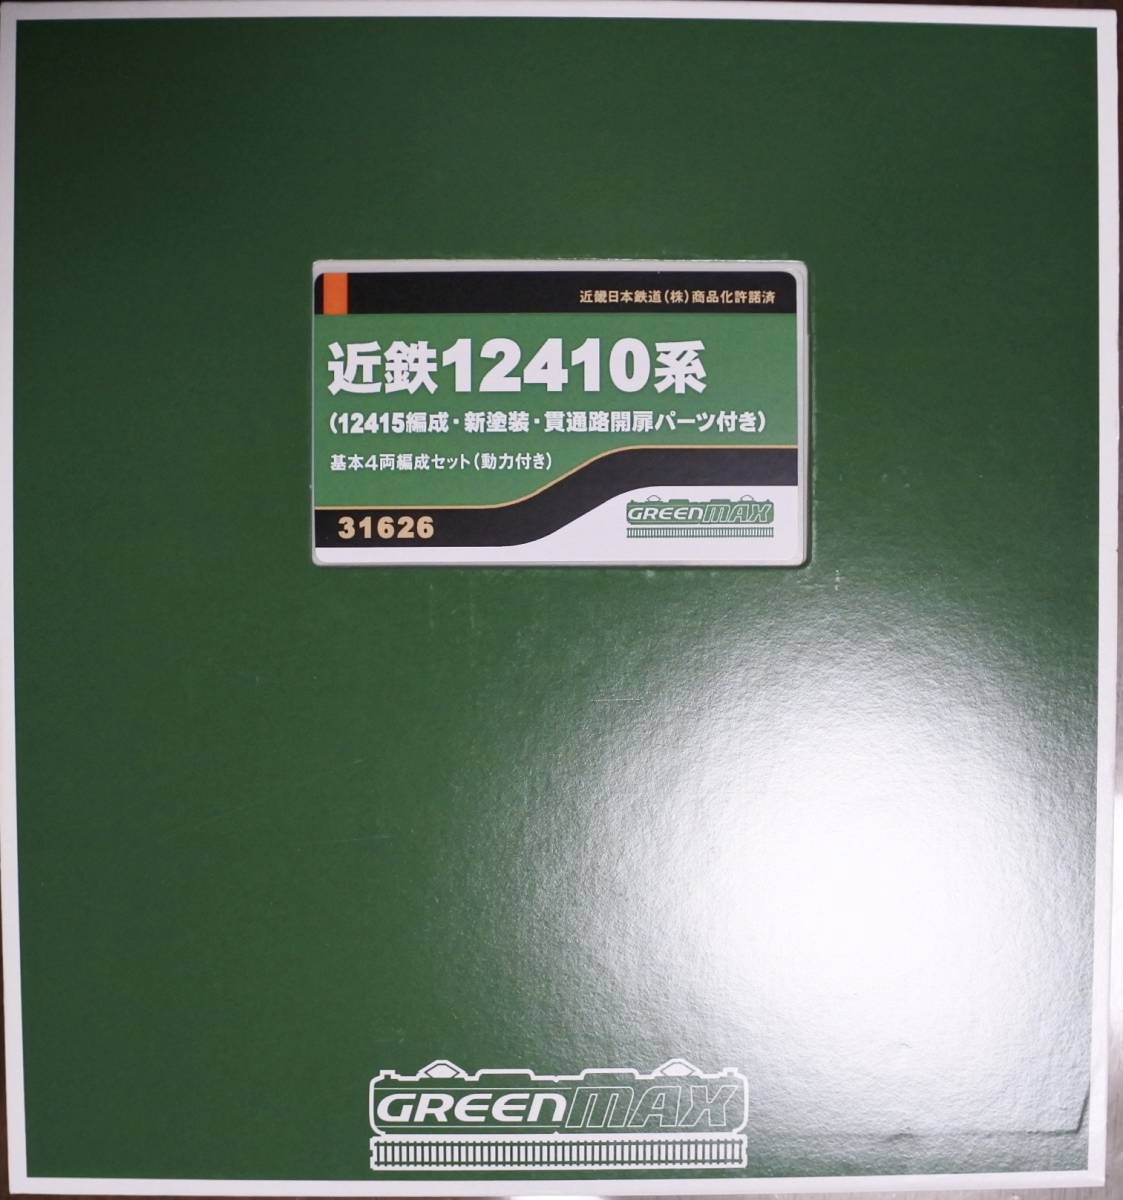  зеленый Max 31626 близко металлический 12410 серия 12415 сборник . основы 4 обе сборник . комплект ( сила машина имеется )* новый товар без пробега *